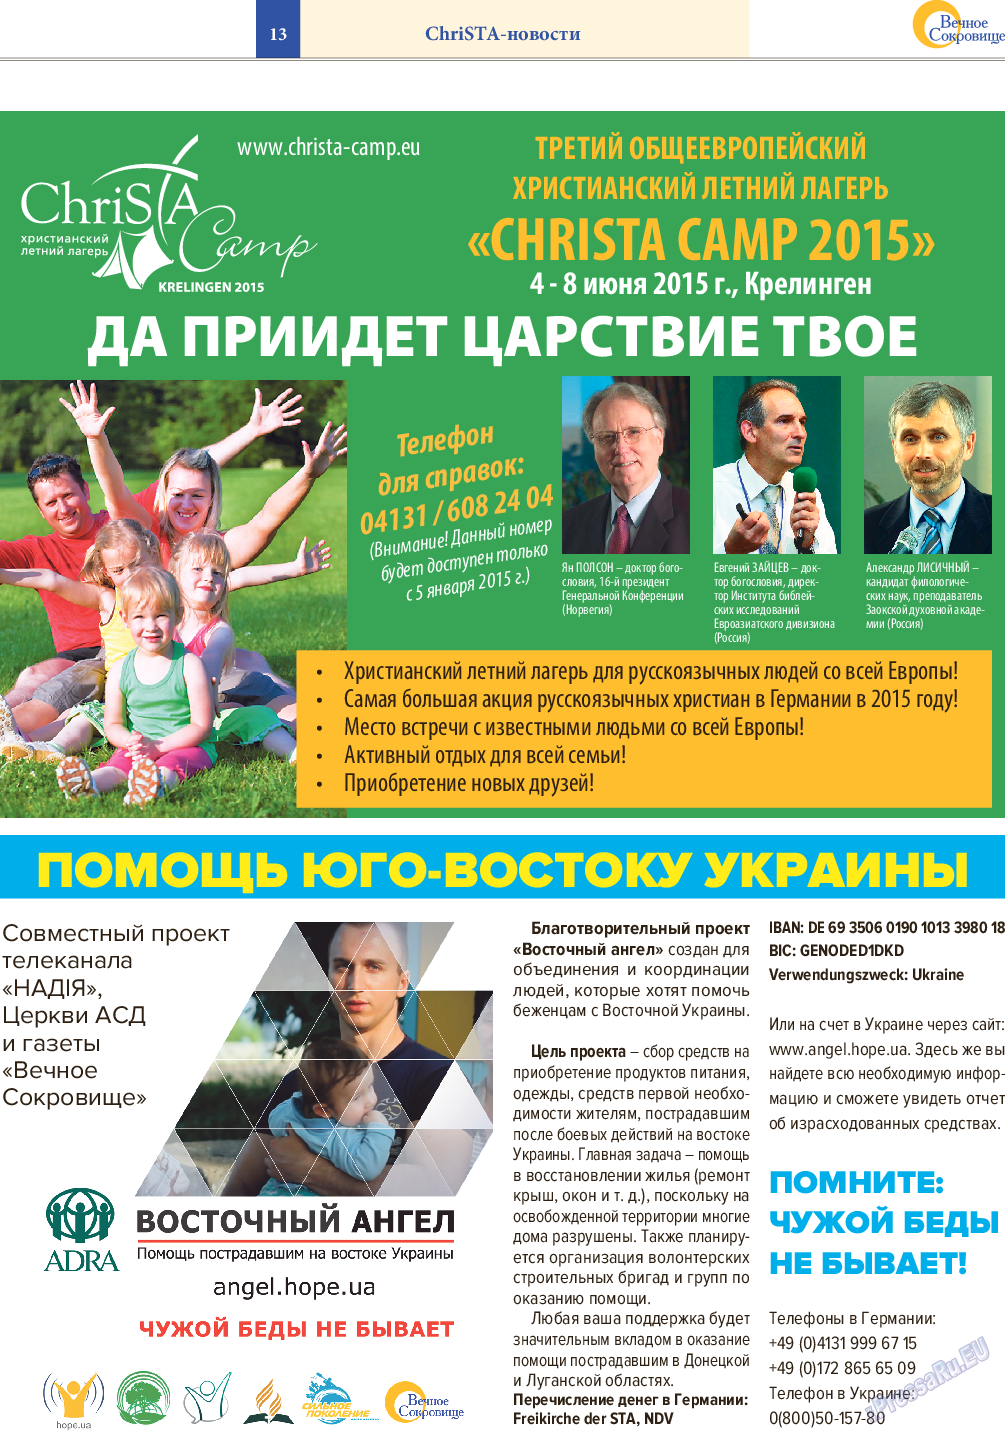 Вечное сокровище, газета. 2014 №6 стр.13